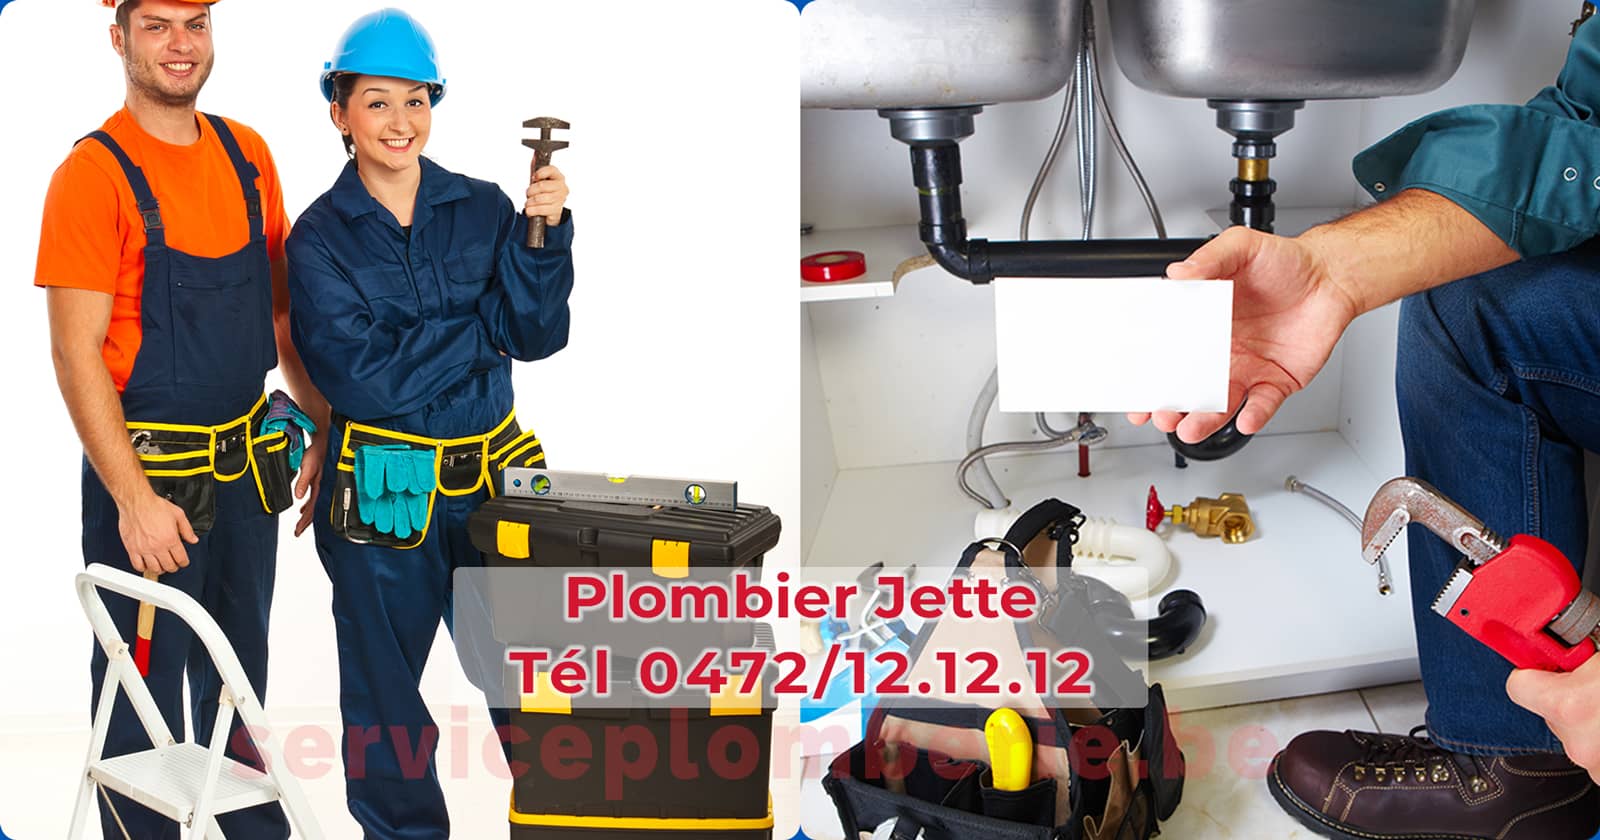 Plombier Jette Agréé Professionnel Service Plomberie Tél 0472/12.12.12